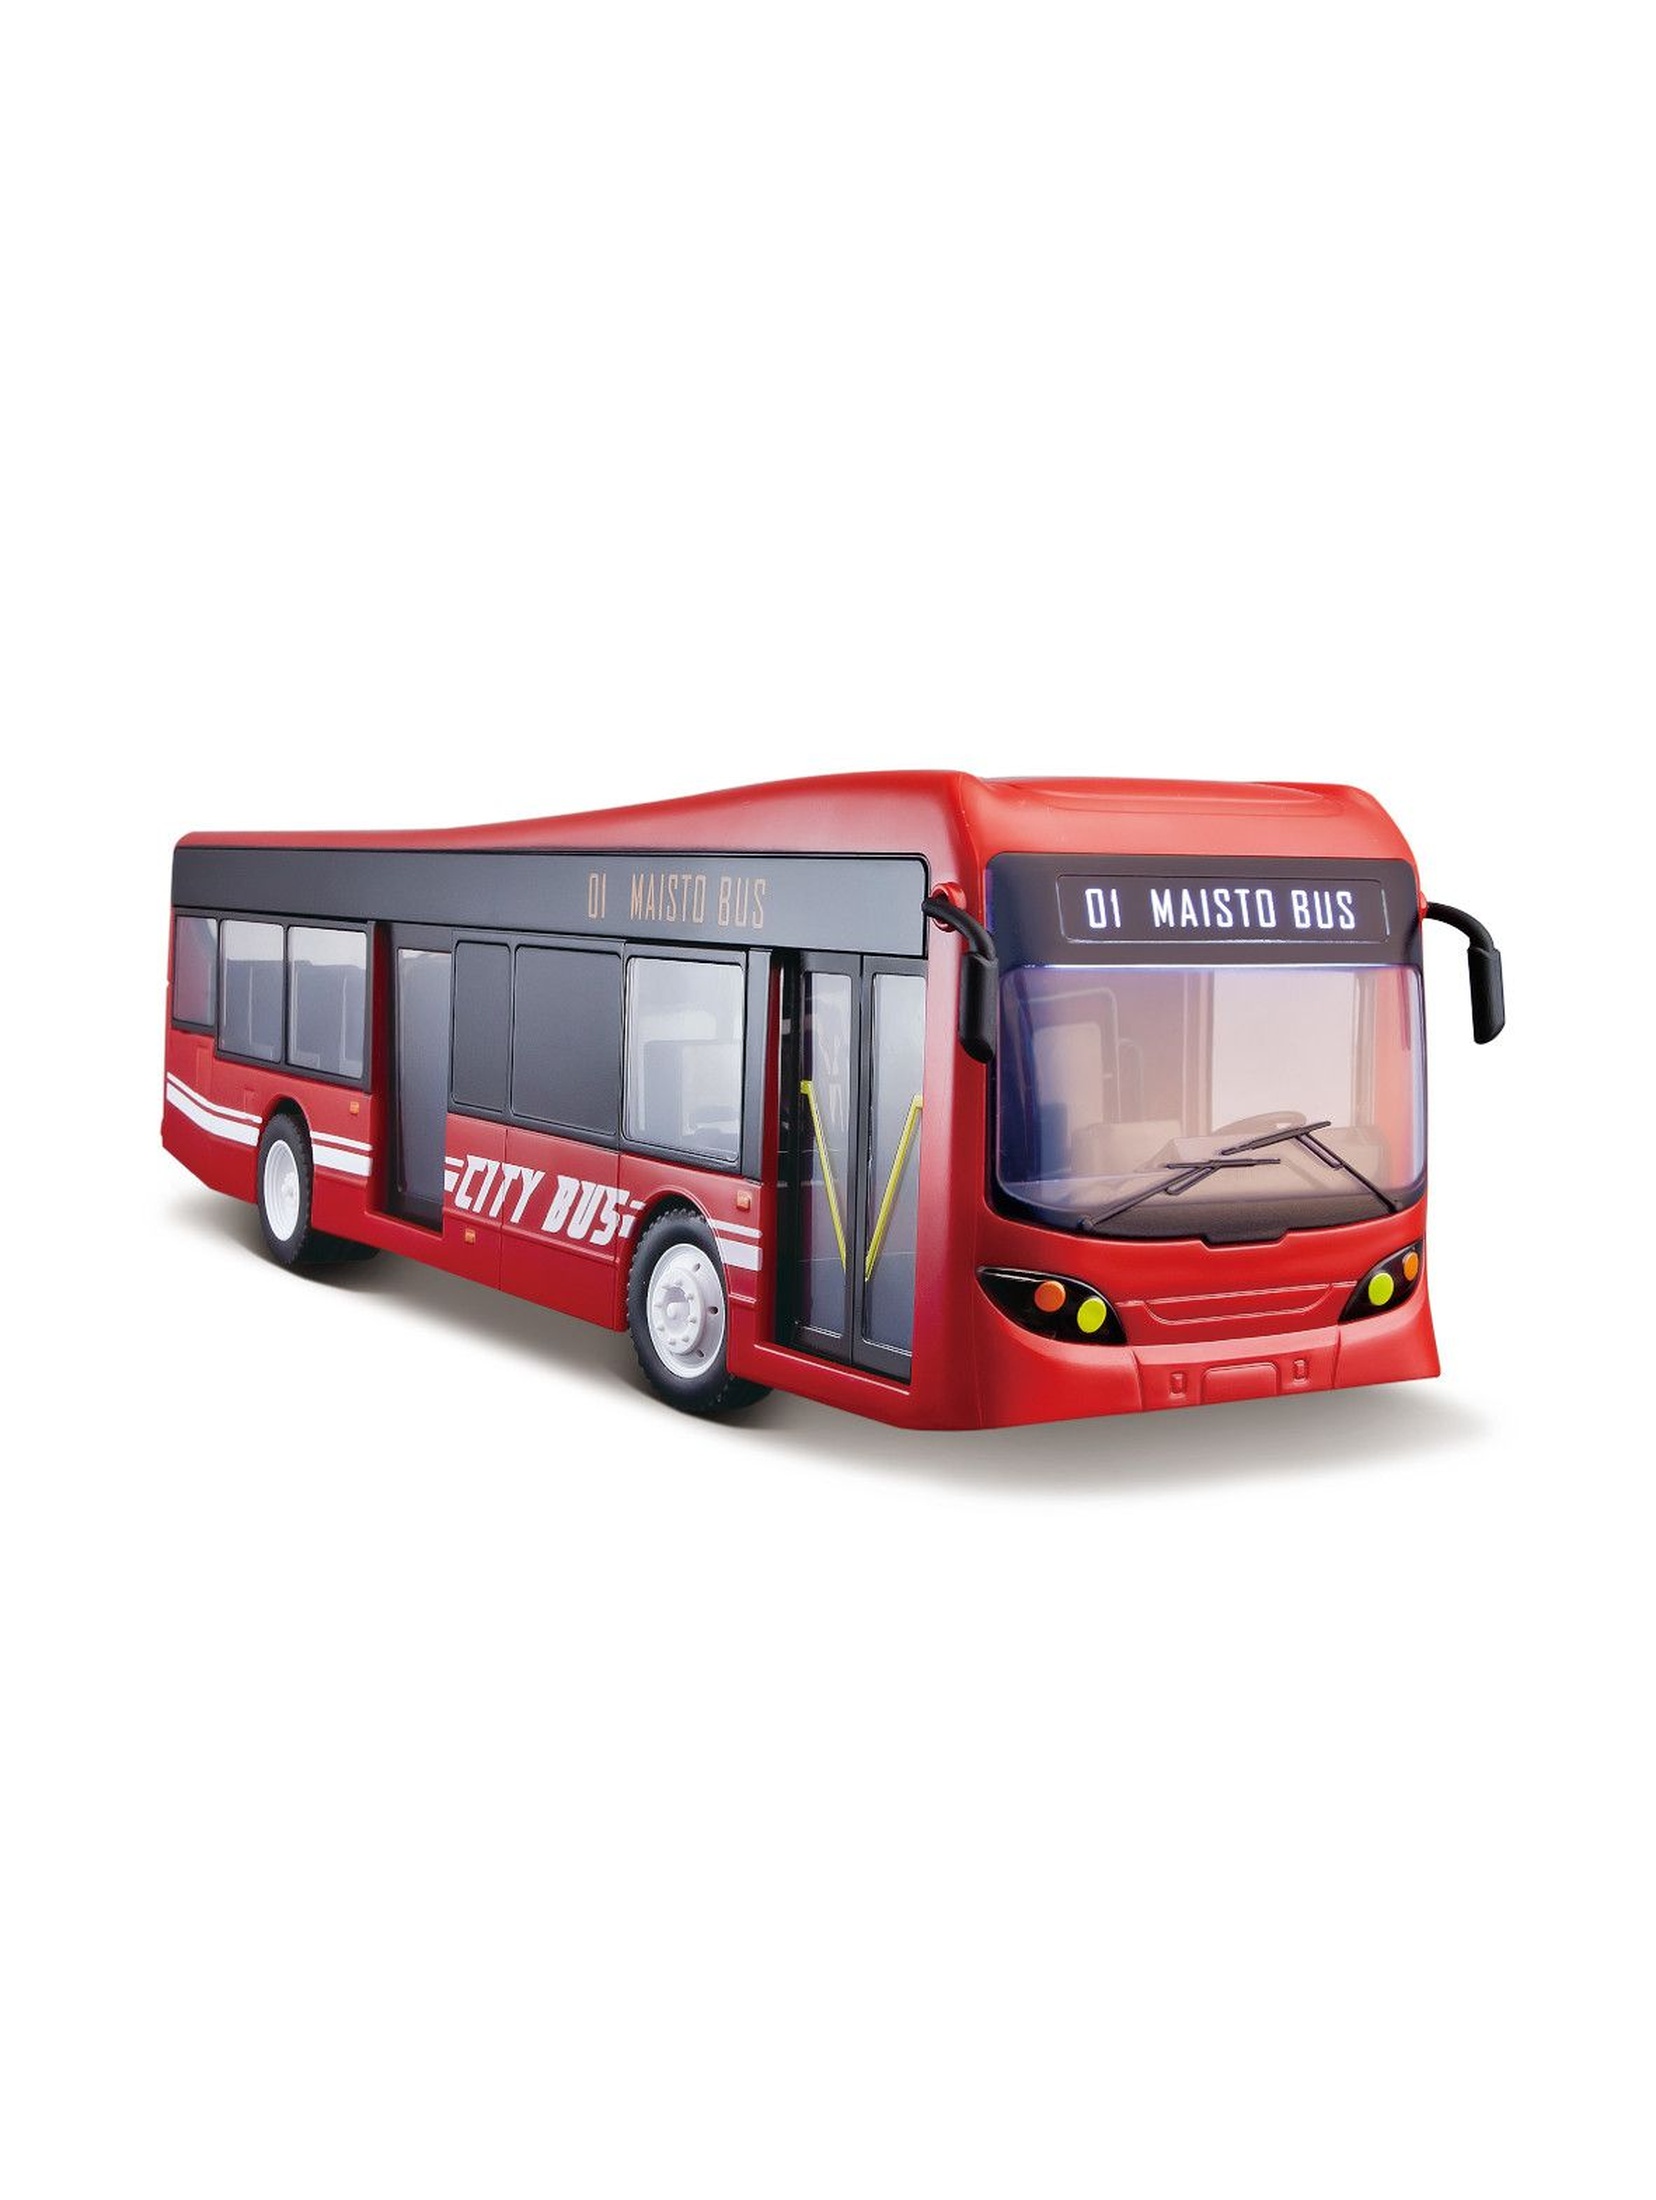 autobus miejski r/c(baterie: 4xaa, 2xaaa)